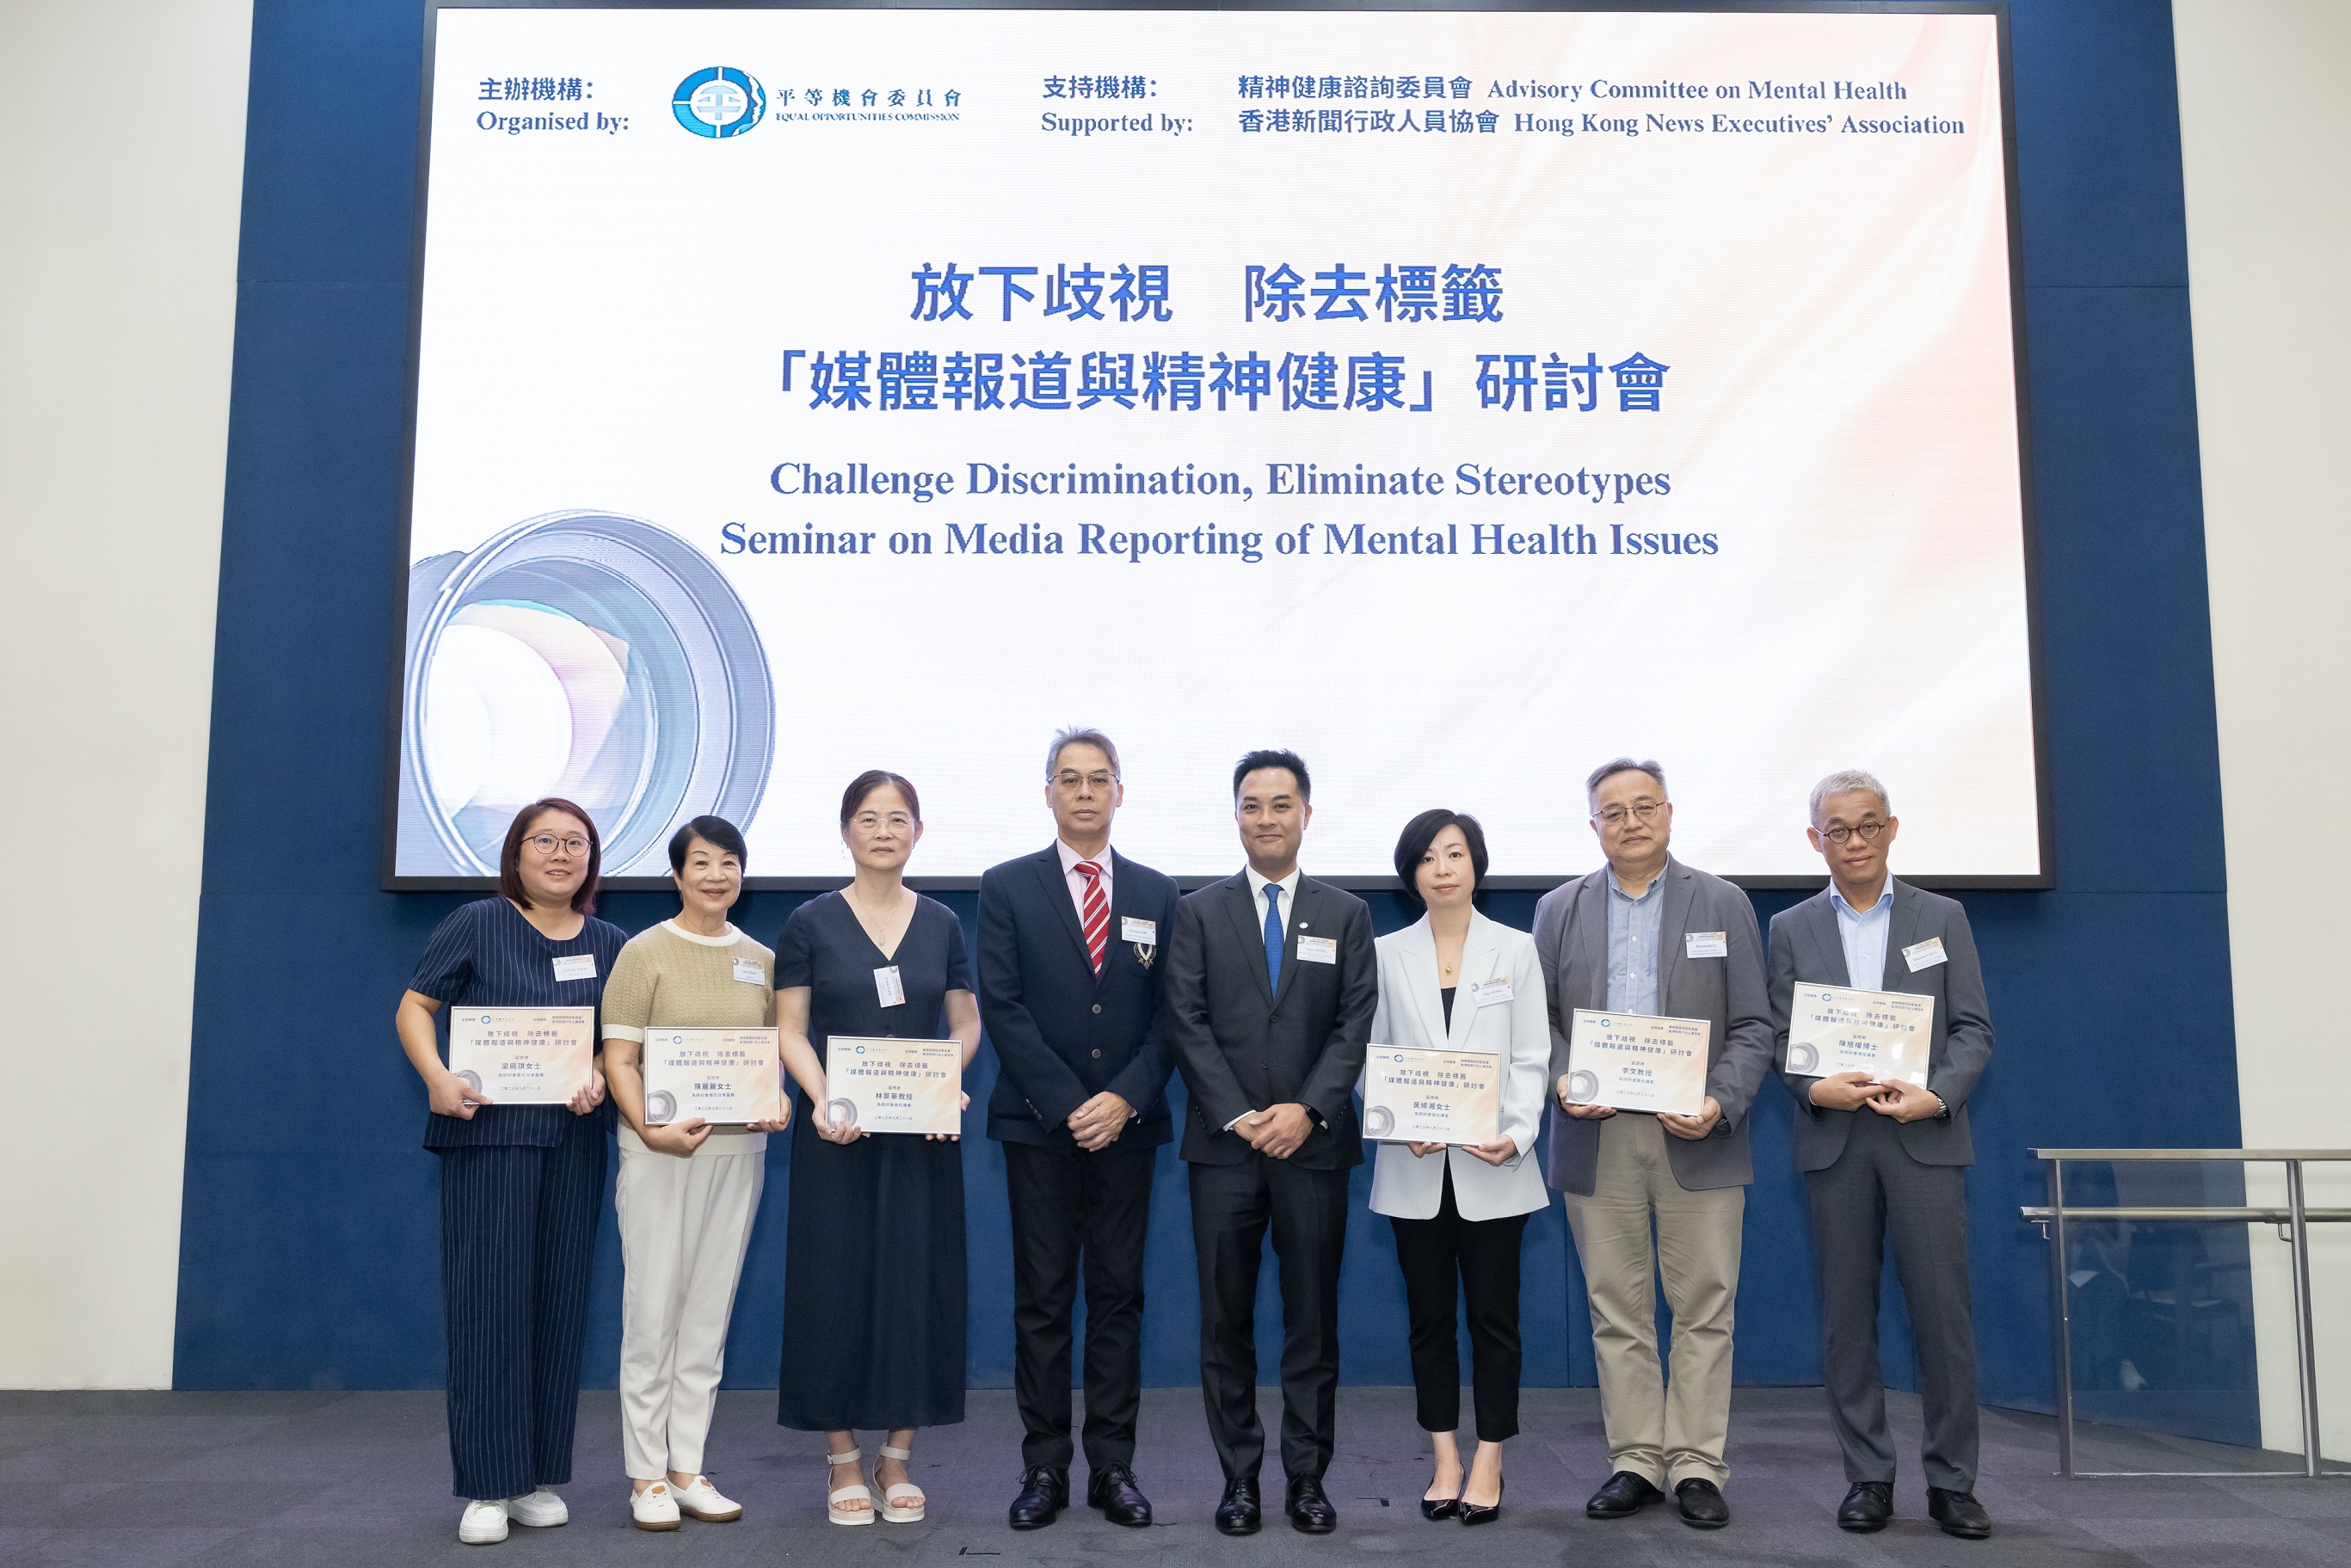 平機會、精神健康諮詢委員會和香港新聞行政人員協會的代表、傳媒界的學者及精神復元人士出席「媒體報道與精神健康」研討會。